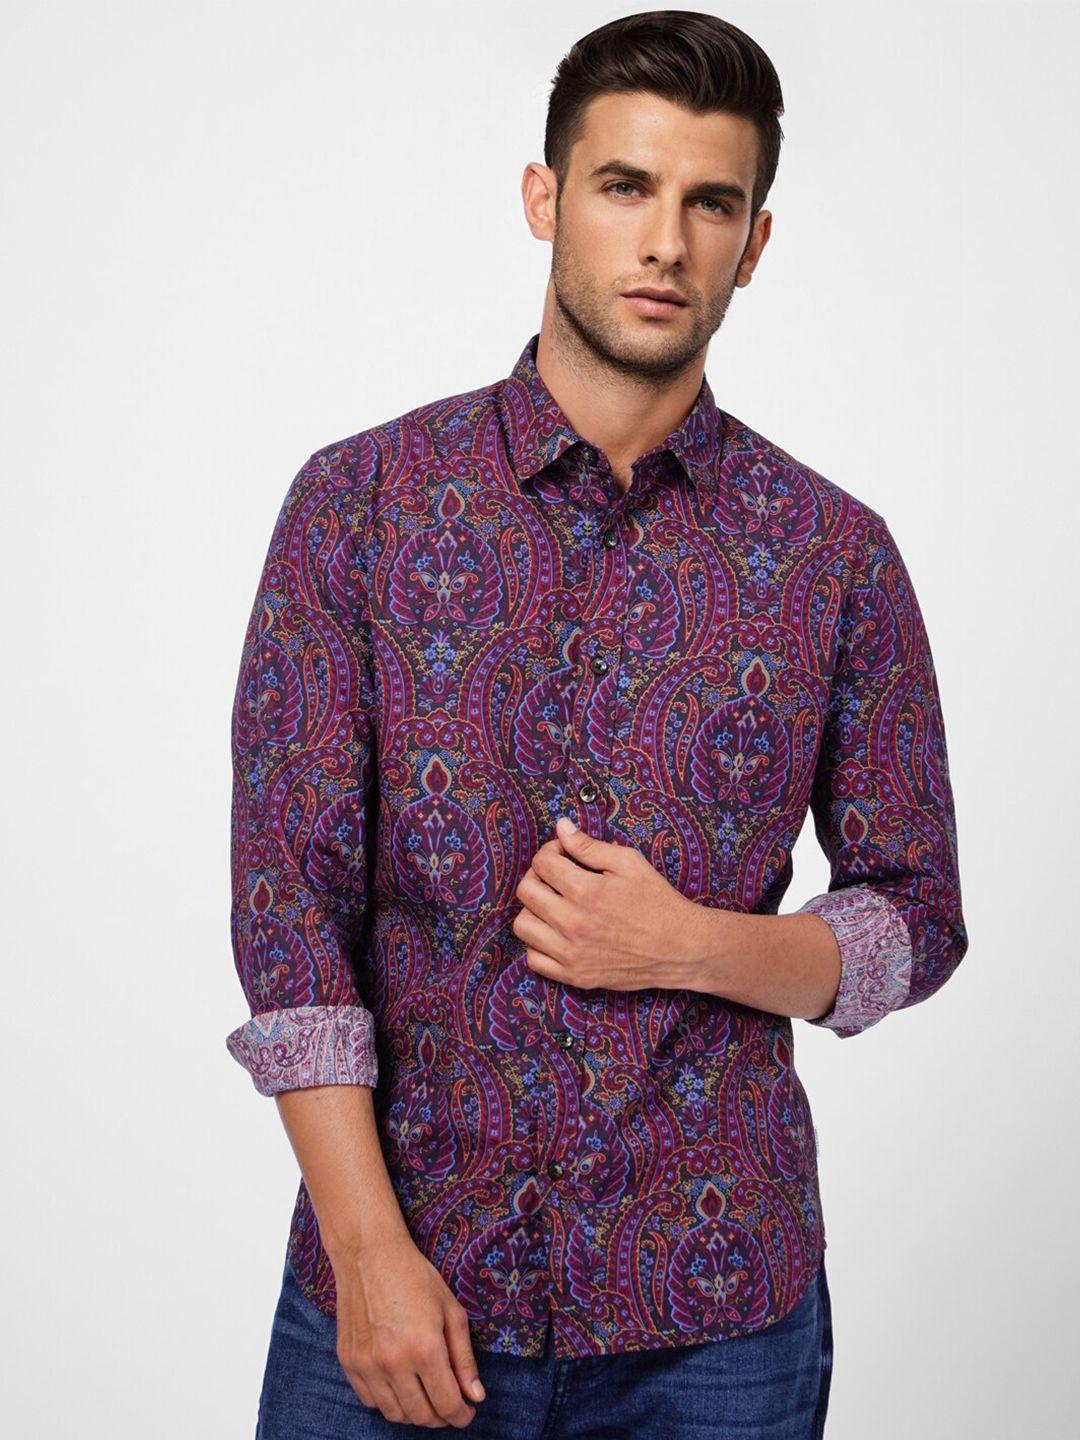 jack & jones men purple cotton floral printed casual shirt